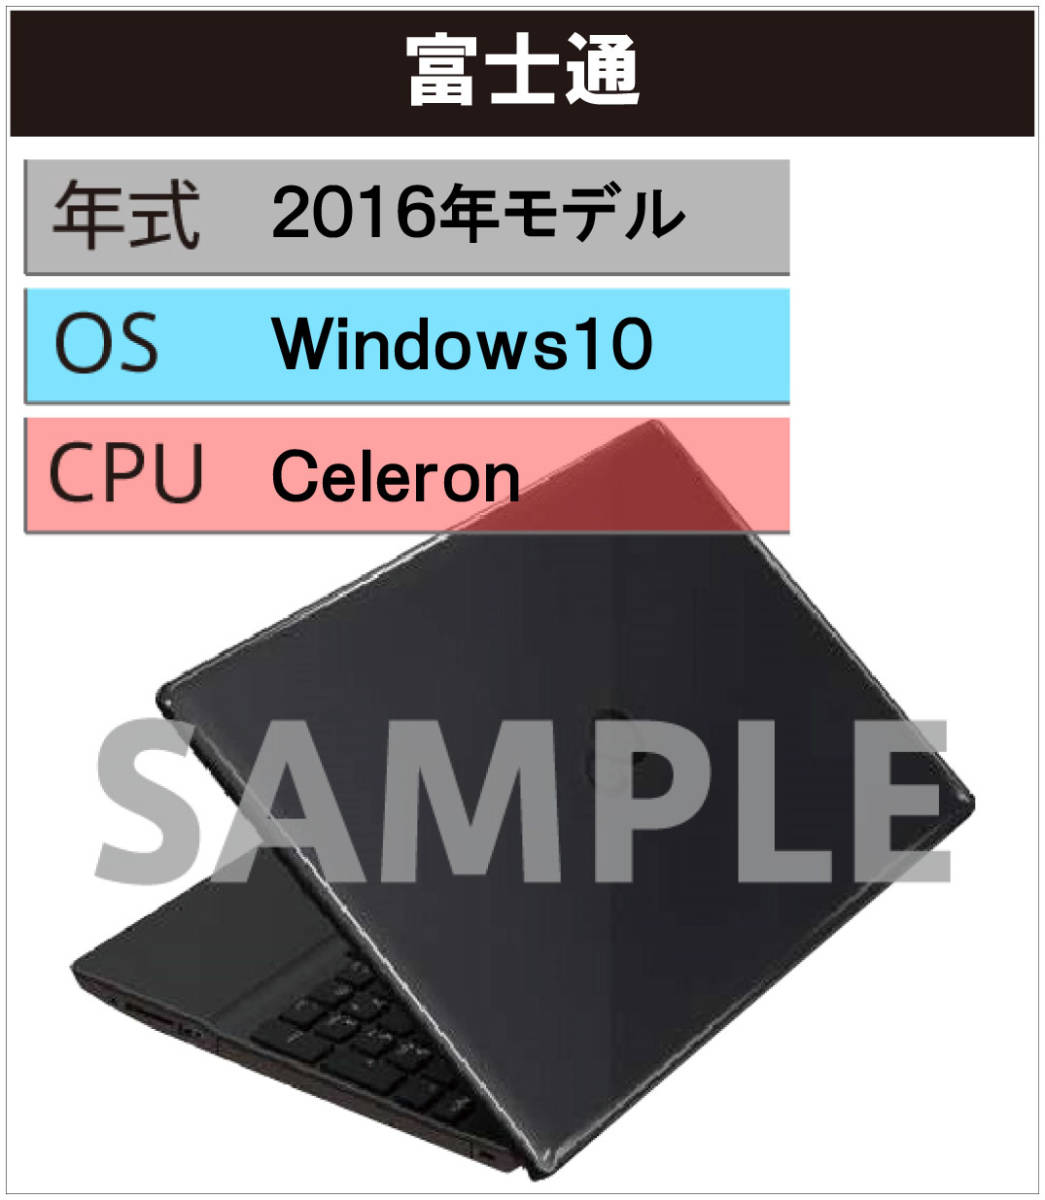 中古パソコン Windows 10 Pro 32Bit搭載 22型液晶セット 富士通 Dシリーズ Celeron～/4G/500GB/DVD-ROM  - aguirreariasyasociados.com